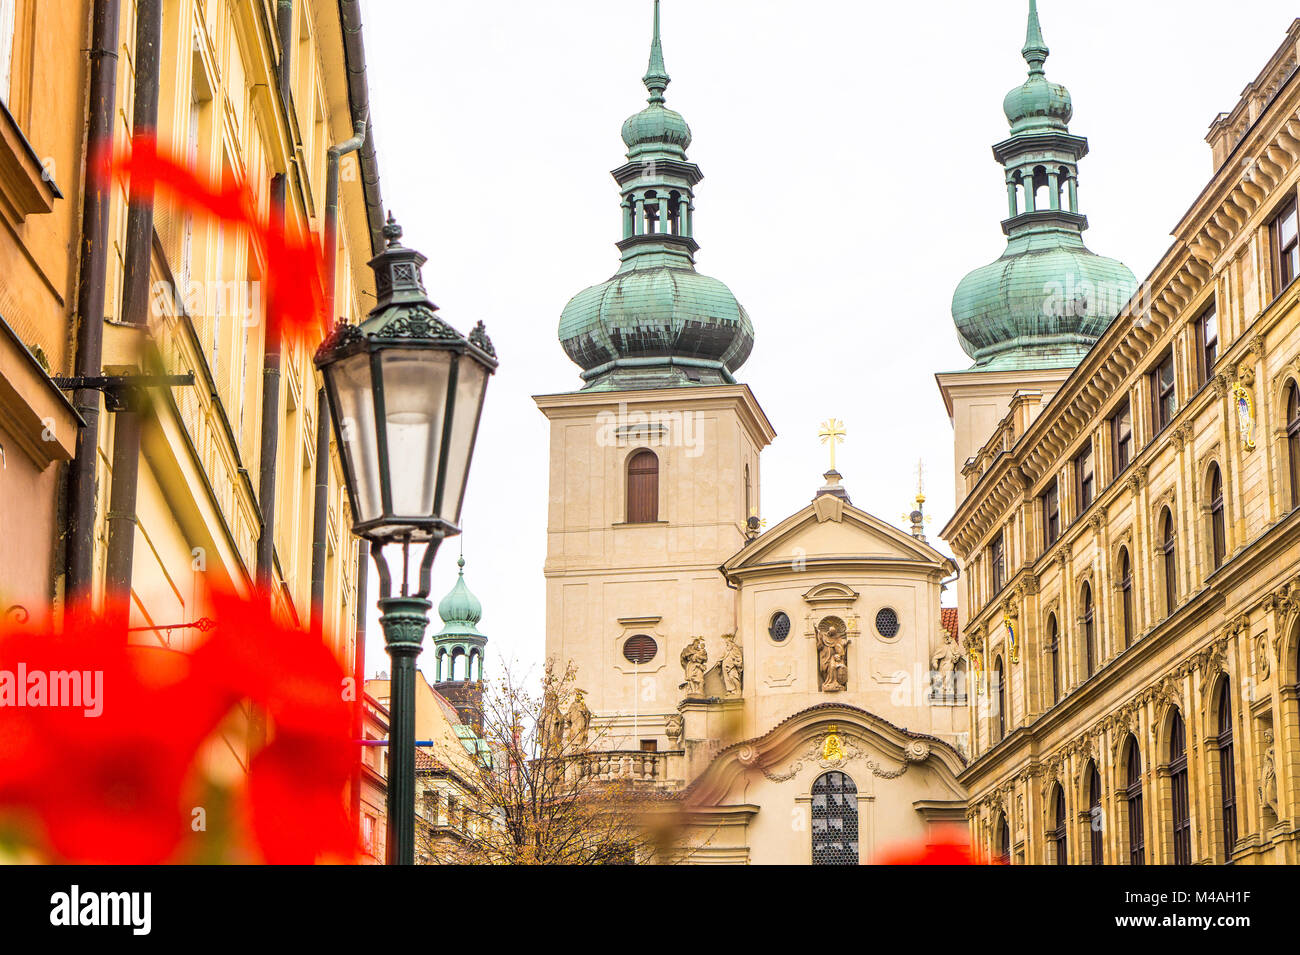 De beaux bâtiments, des fleurs et la lanterne dans la vieille ville de Prague en République tchèque. Banque D'Images